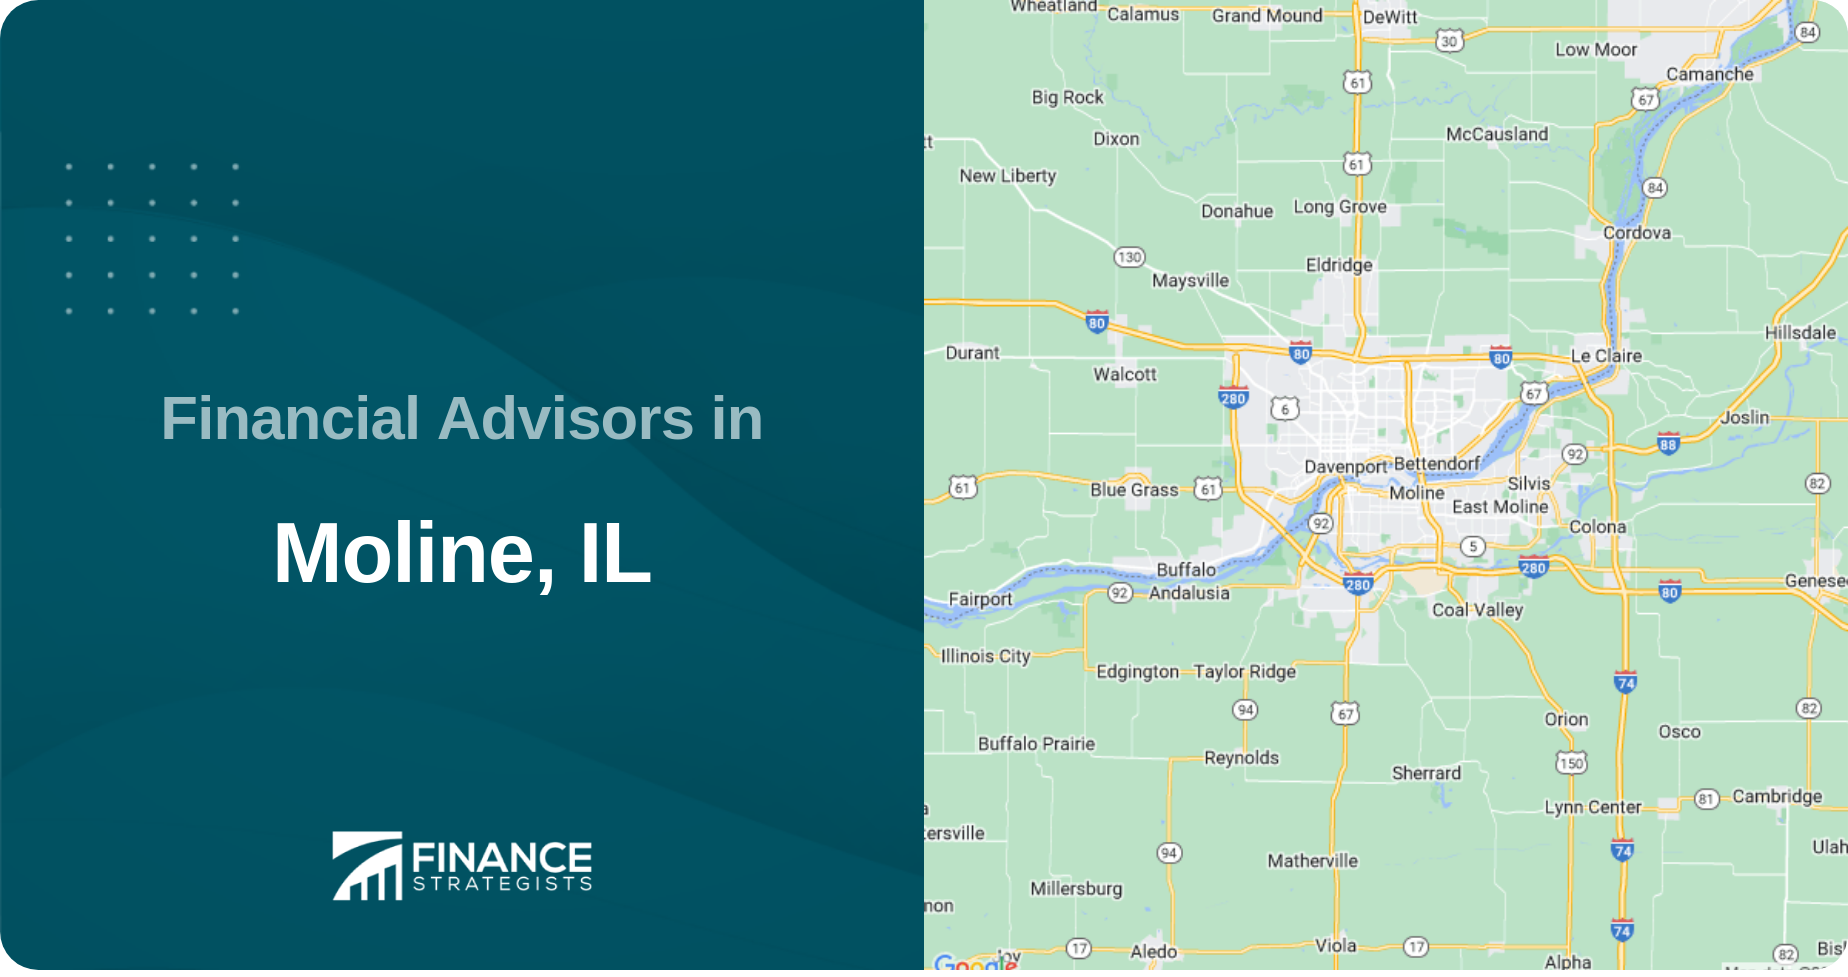 Financial Advisors in Moline, IL